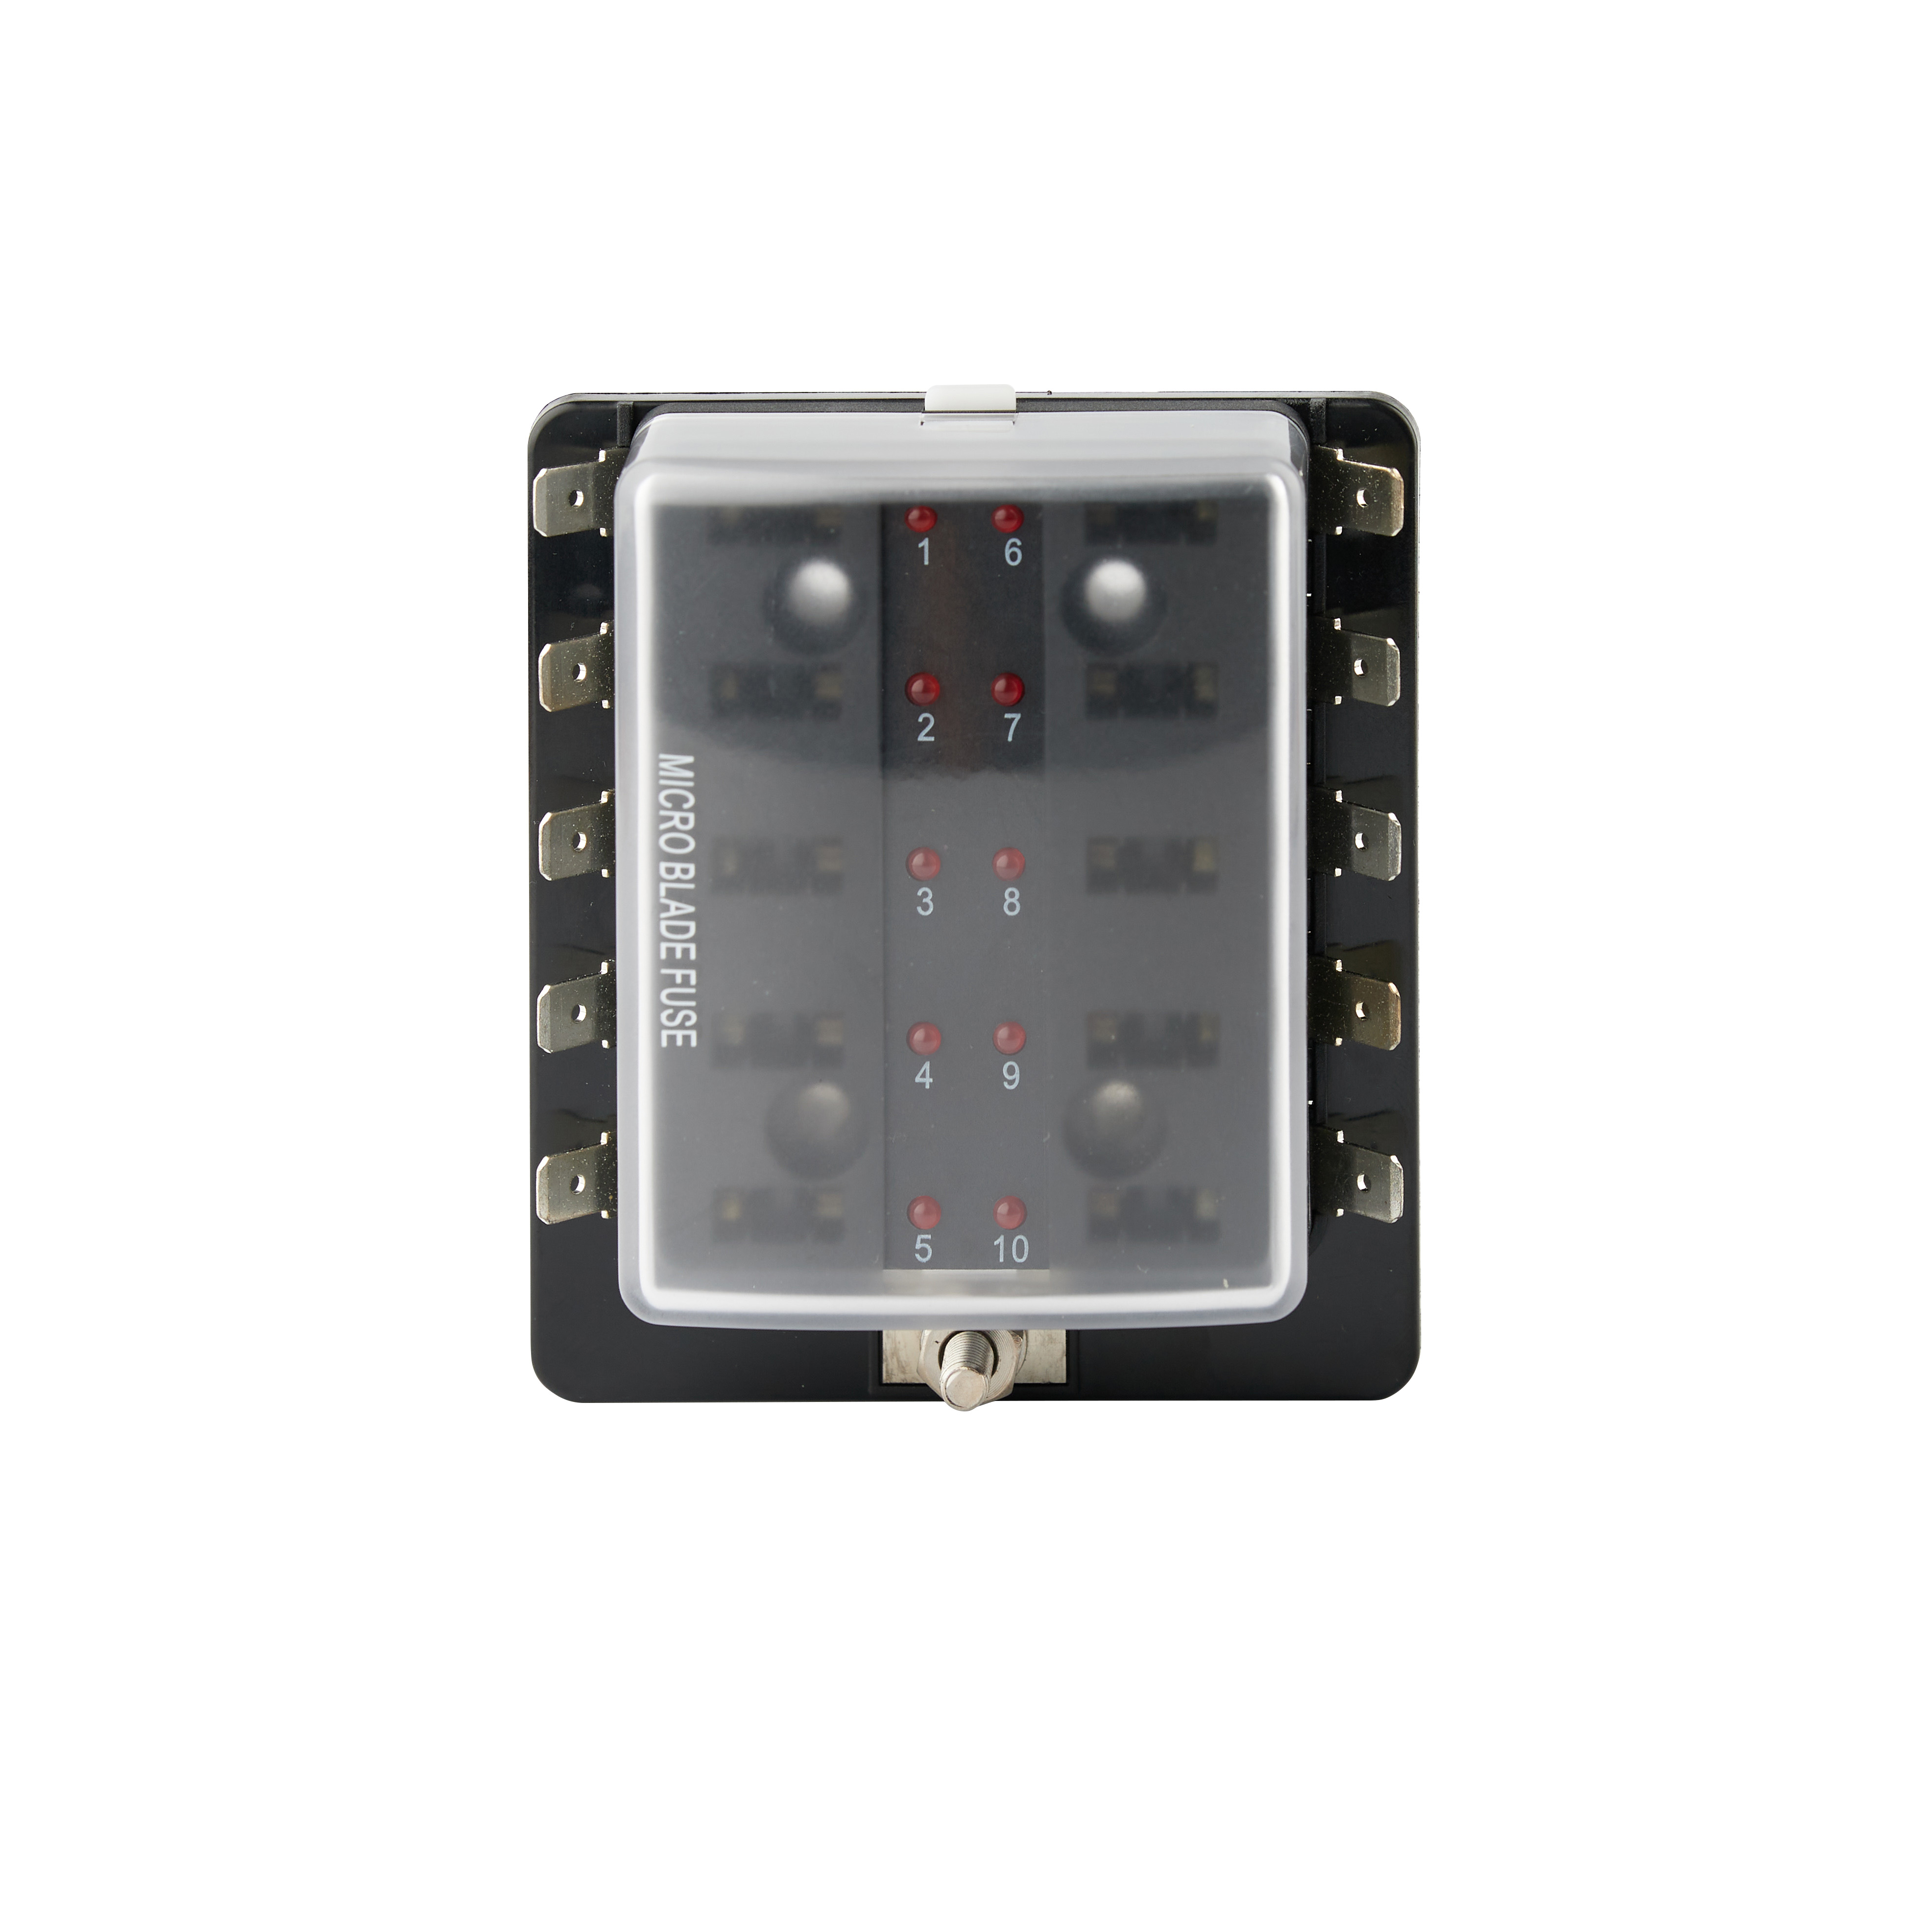 R3-80-01-1 方塊型保險絲盒 含LED 警示燈、微型刀片保險絲